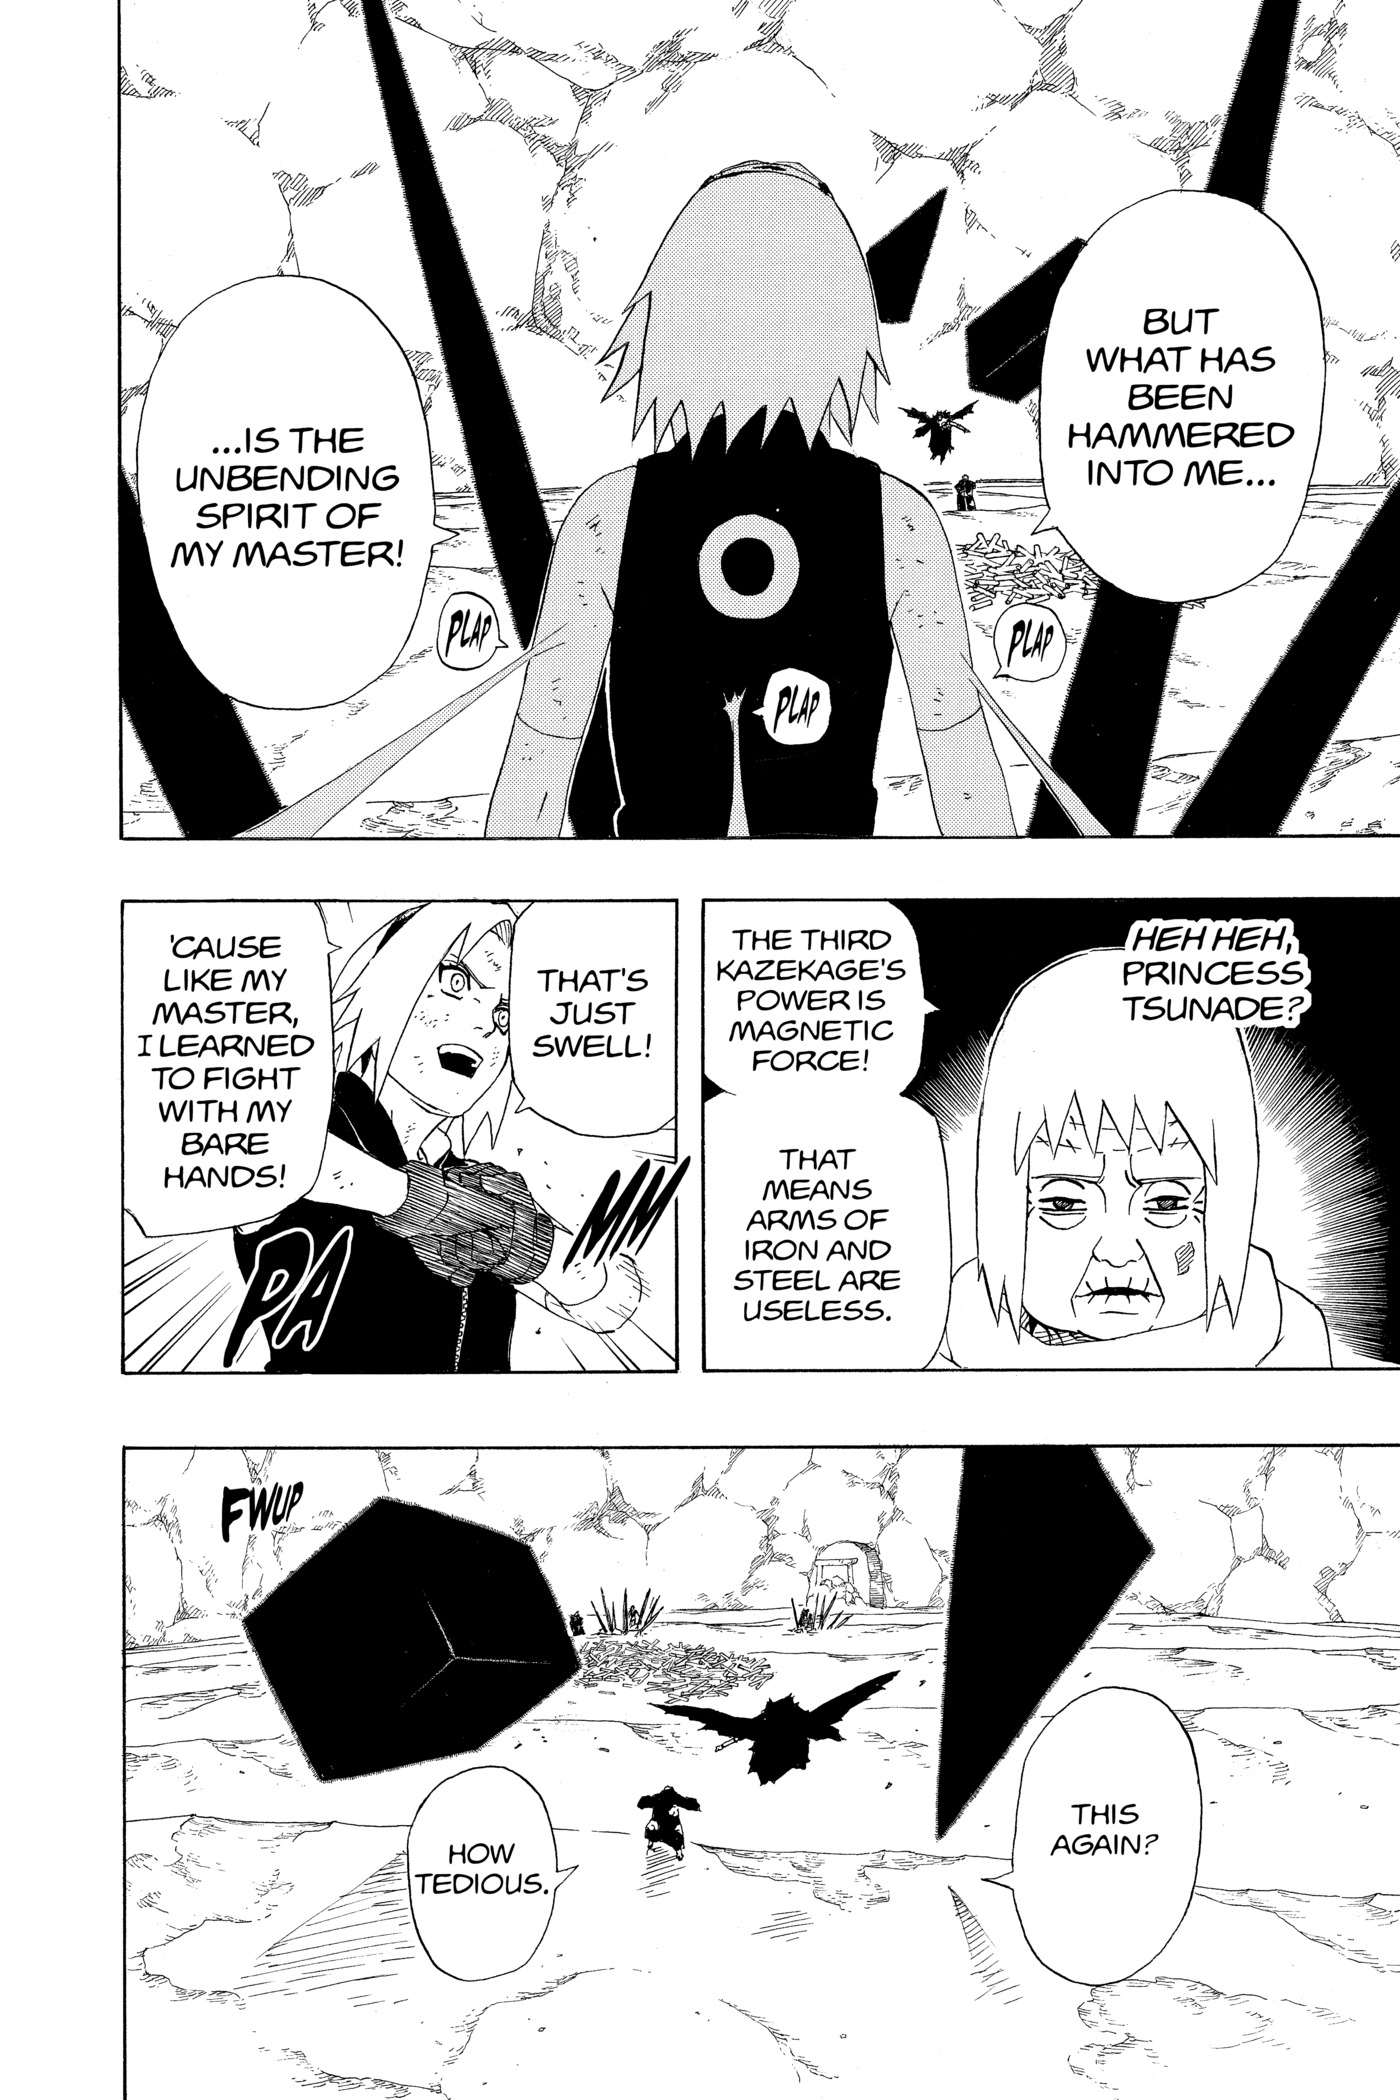 BD: Lançamento – Naruto vol. 30: Chiyo e Sakura